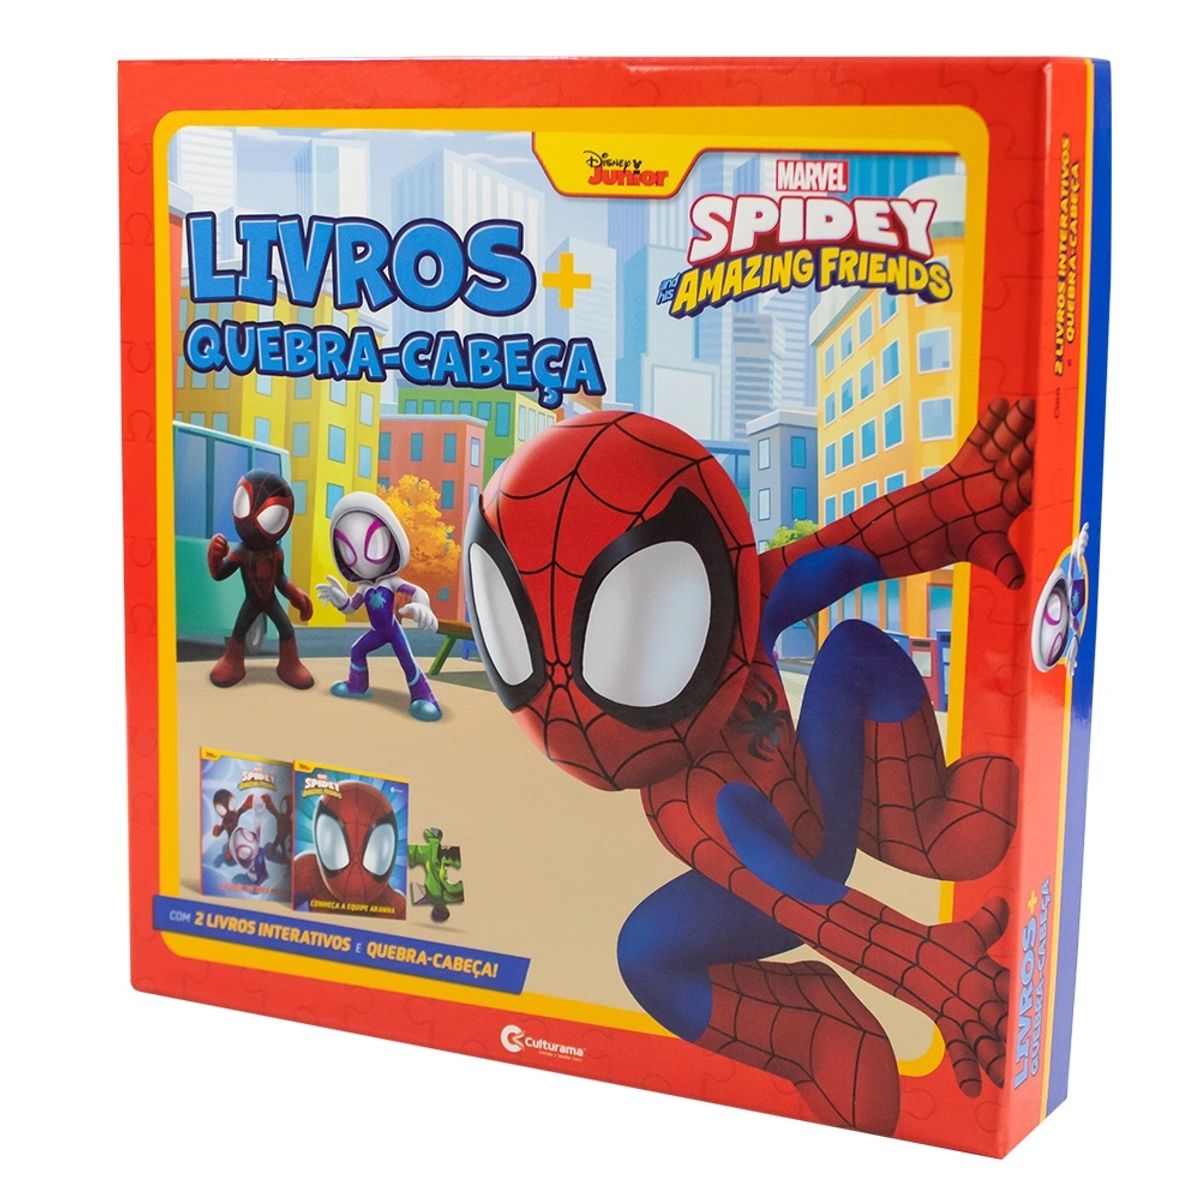 Box de Livros + Quebra-Cabeça Culturama Marvel Homem Aranha